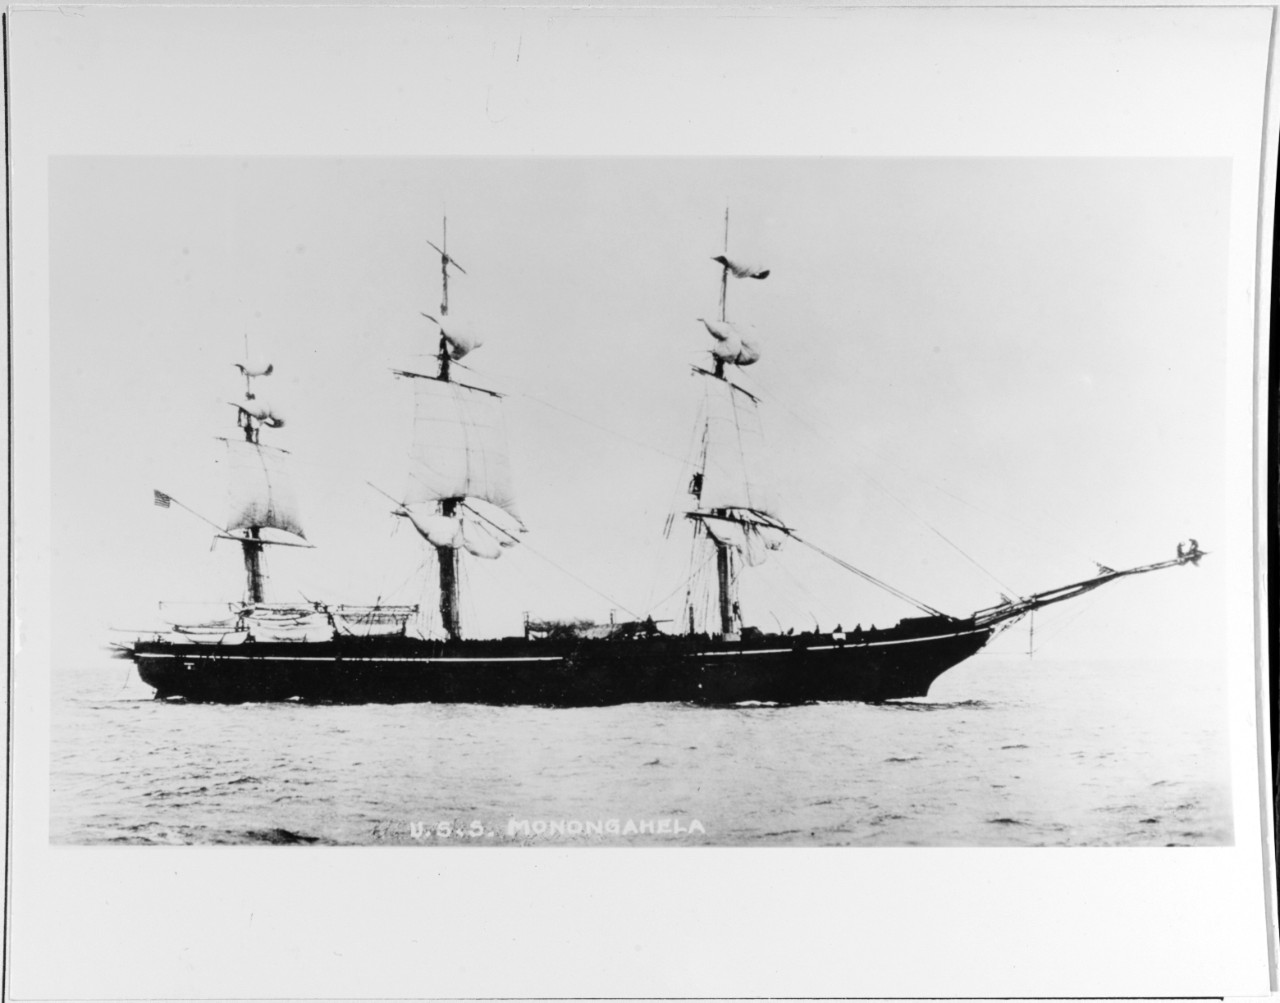 USS MONONGAHELA (frigate) 1862-1908